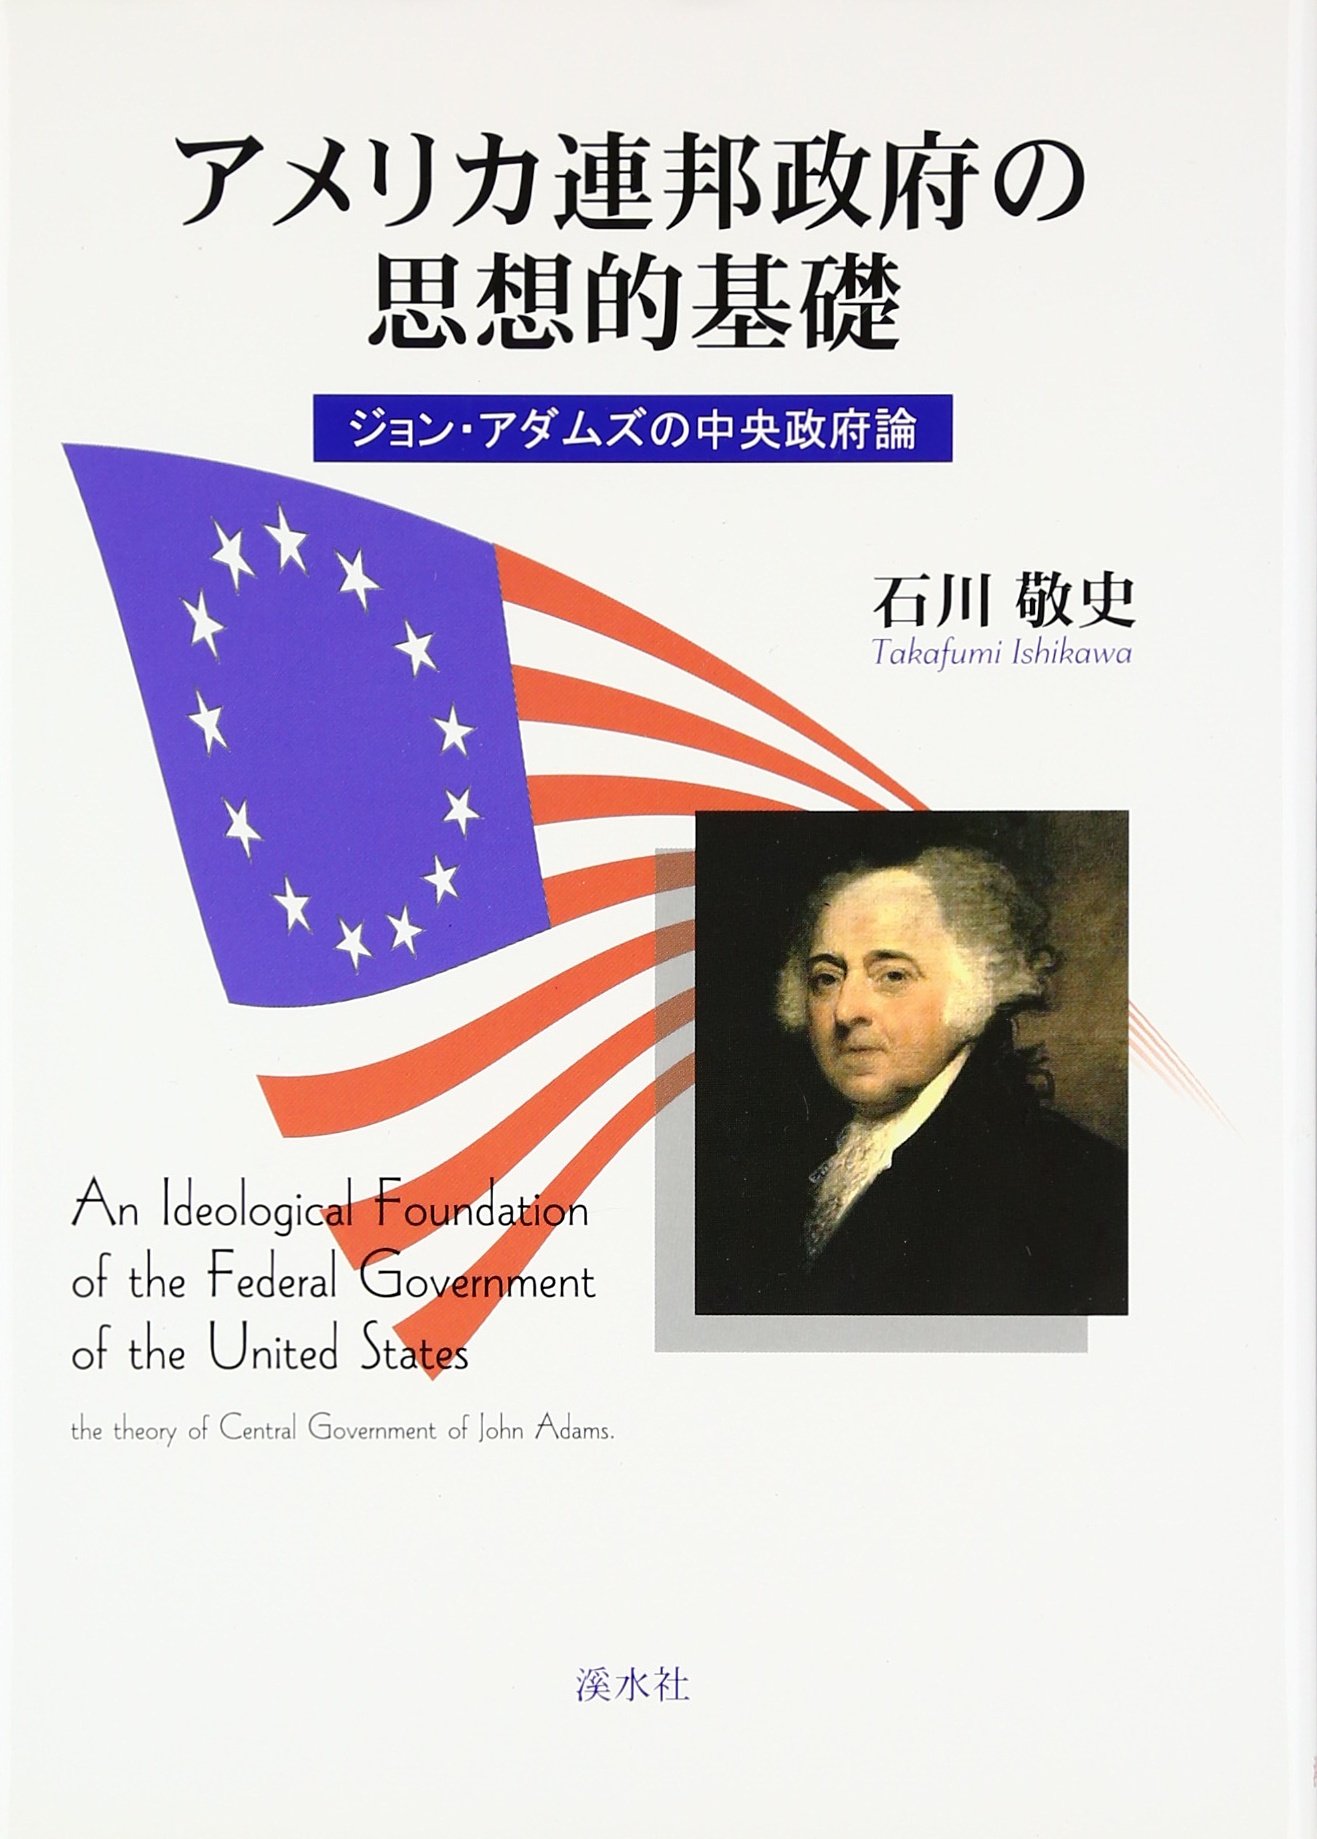 アメリカ連邦政府の思想的基礎ージョン・アダムズの中央政府論(石川敬史)